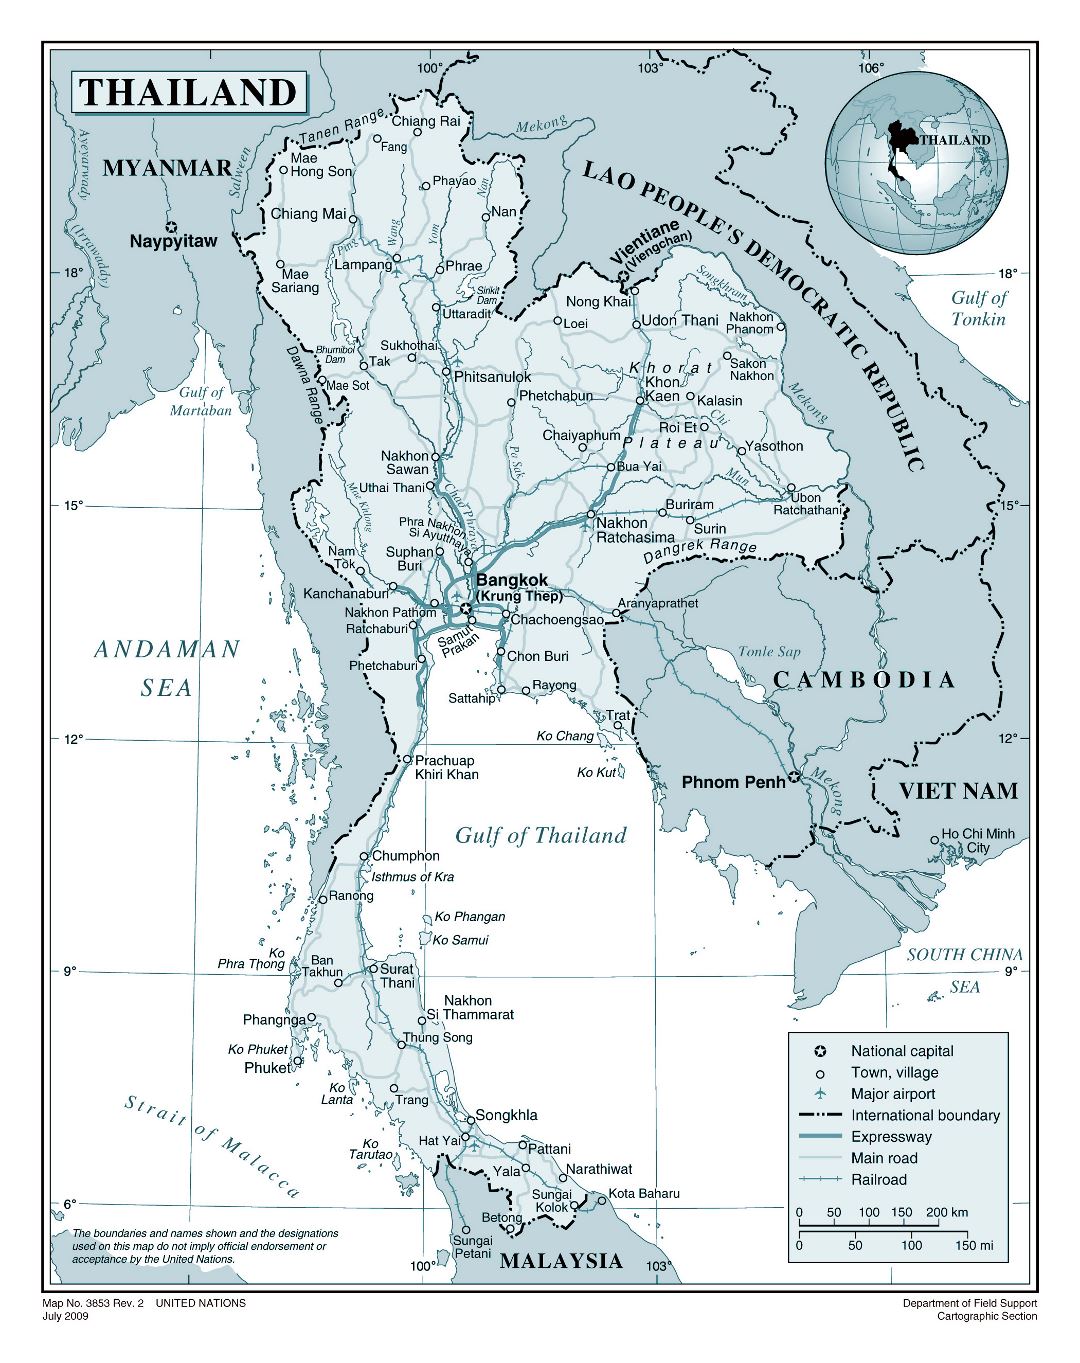 Grande detallado mapa político de Tailandia con carreteras, ferrocarriles, ciudades y aeropuertos